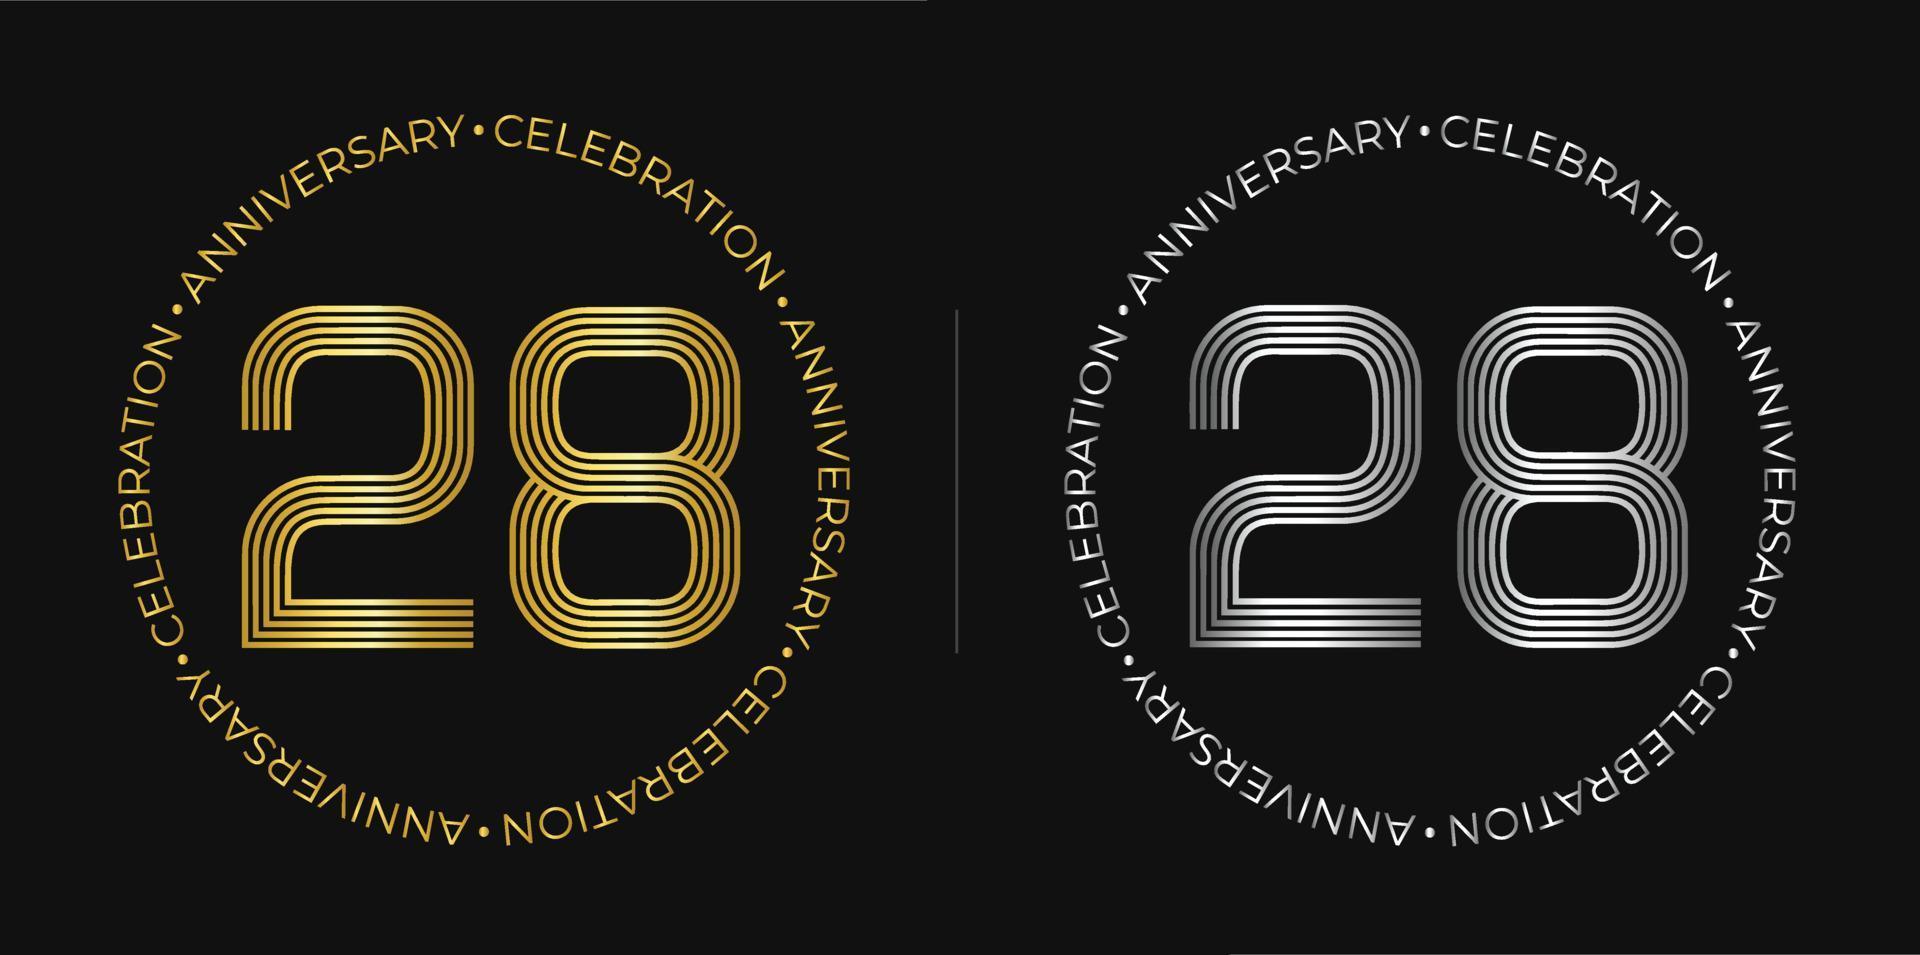 28 cumpleaños. banner de celebración de aniversario de veintiocho años en colores dorado y plateado. logo circular con diseño de números originales en líneas elegantes. vector